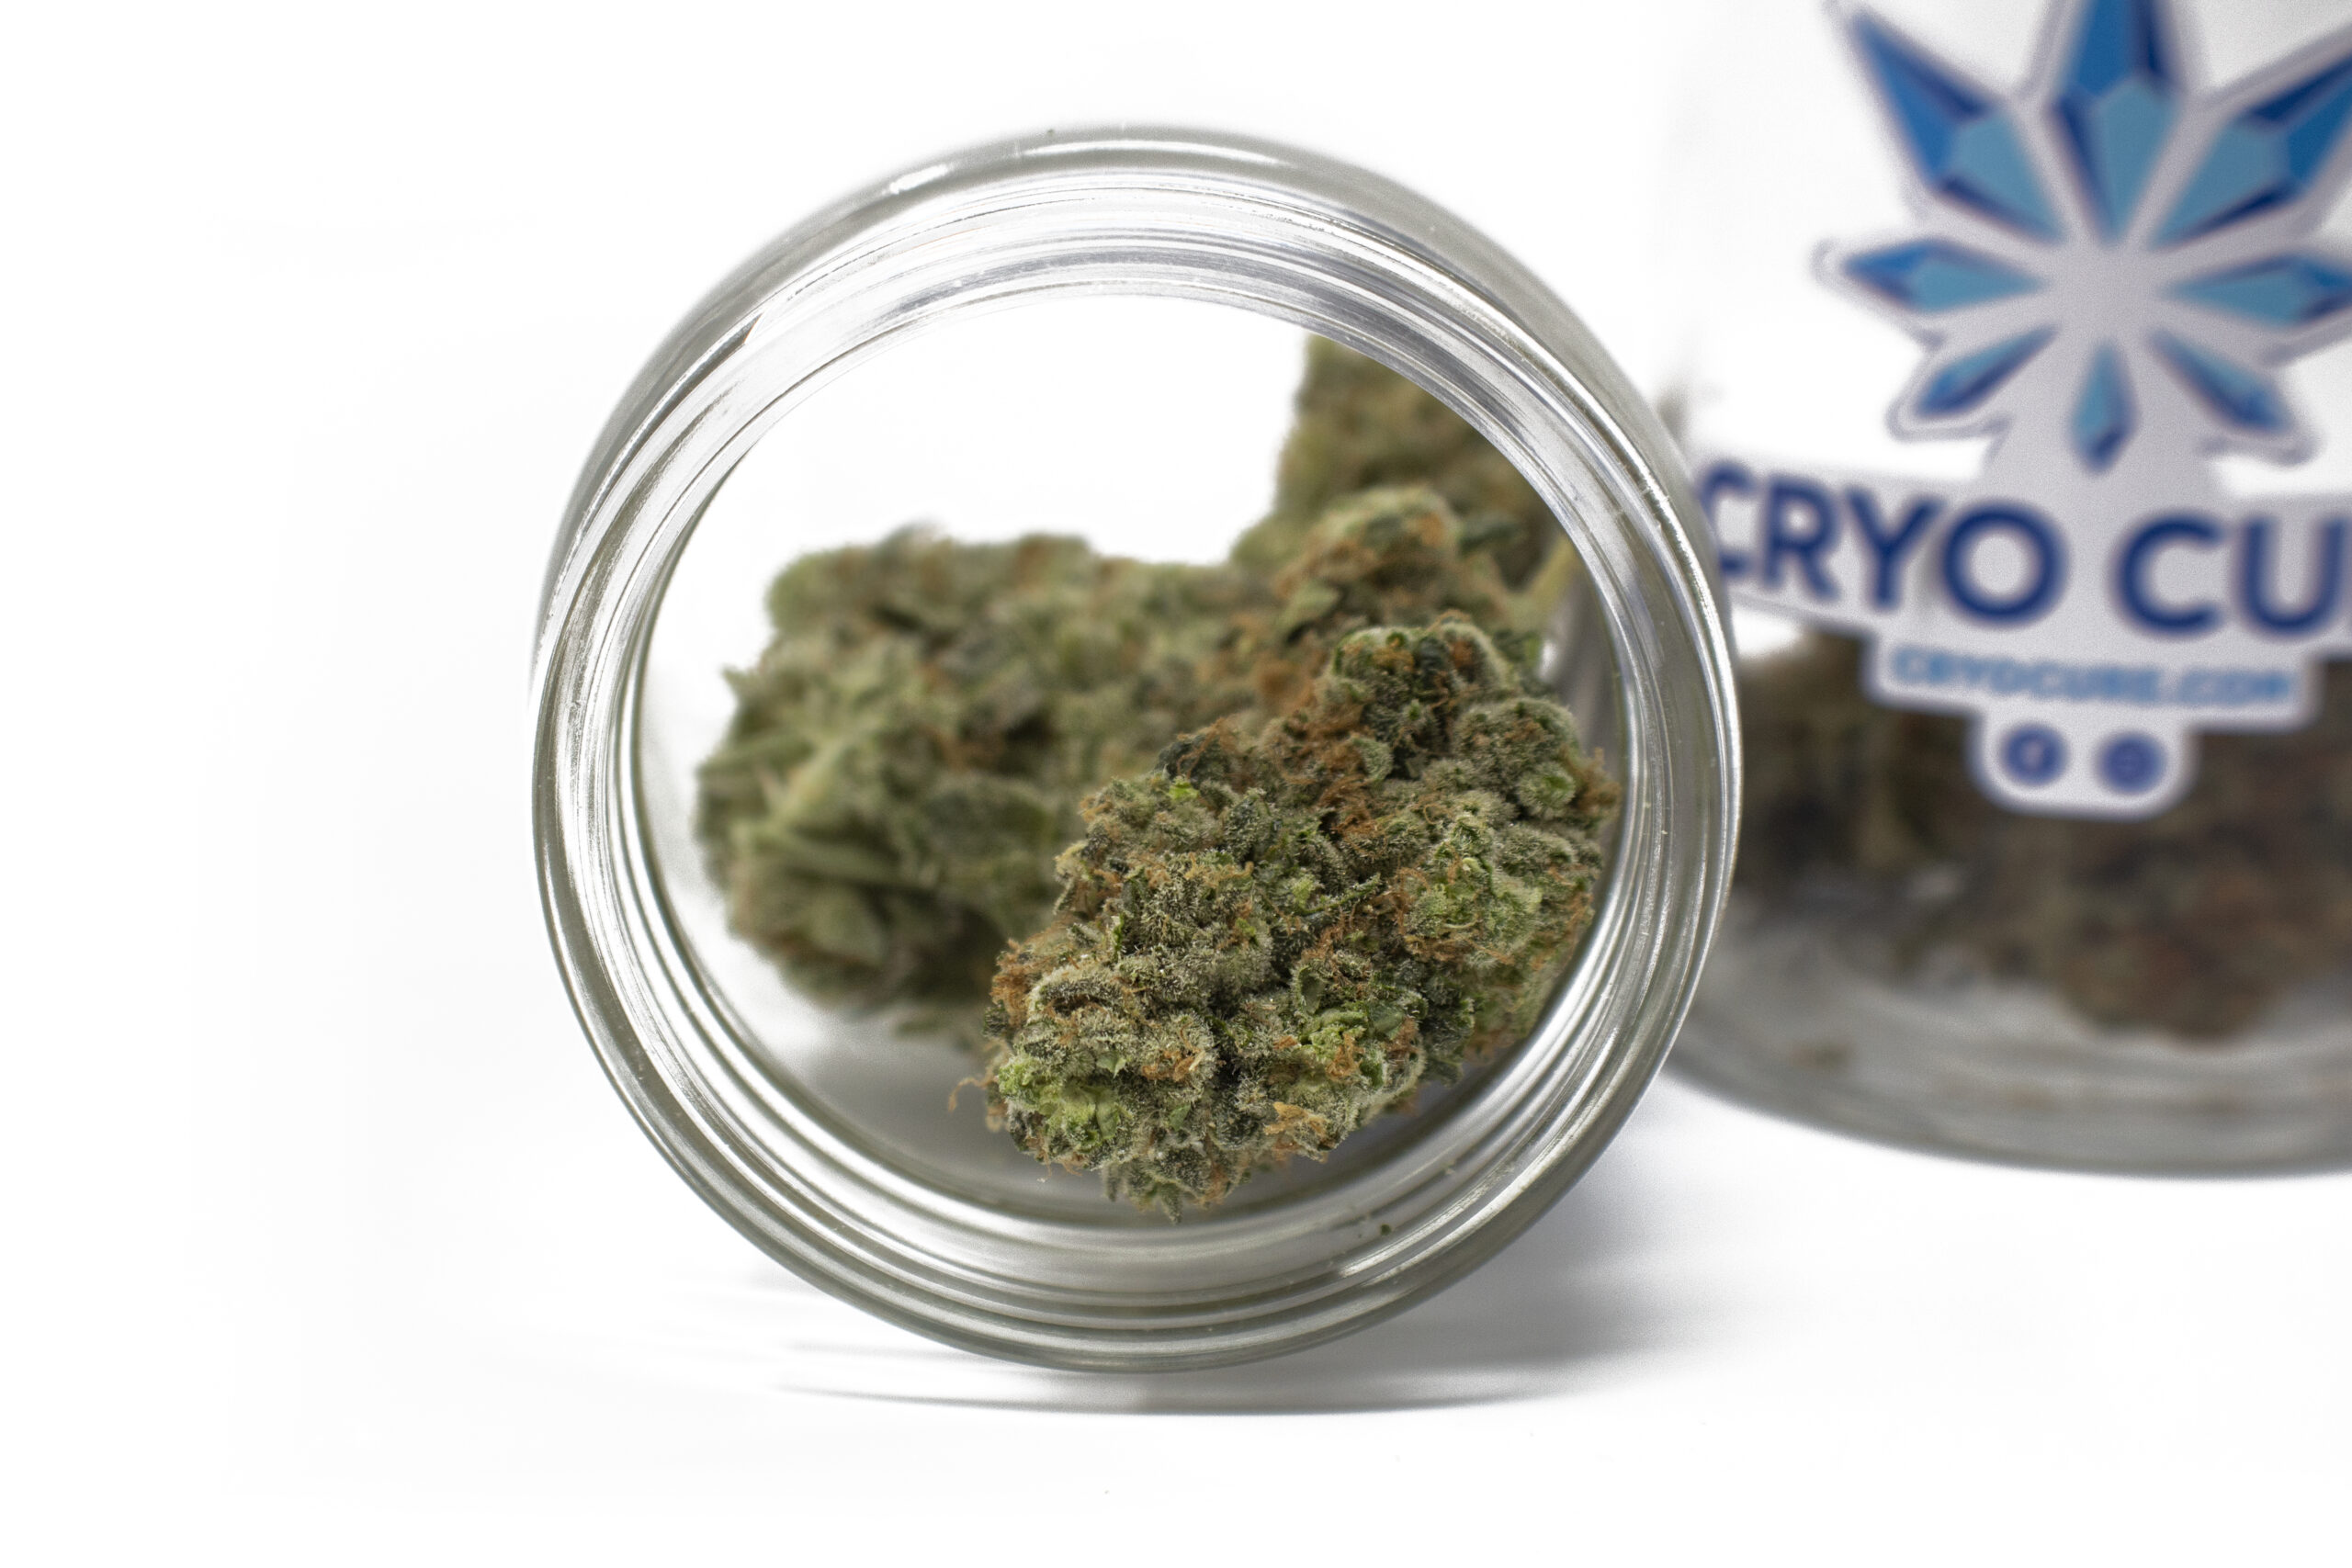 dried cannabis using cryo cure